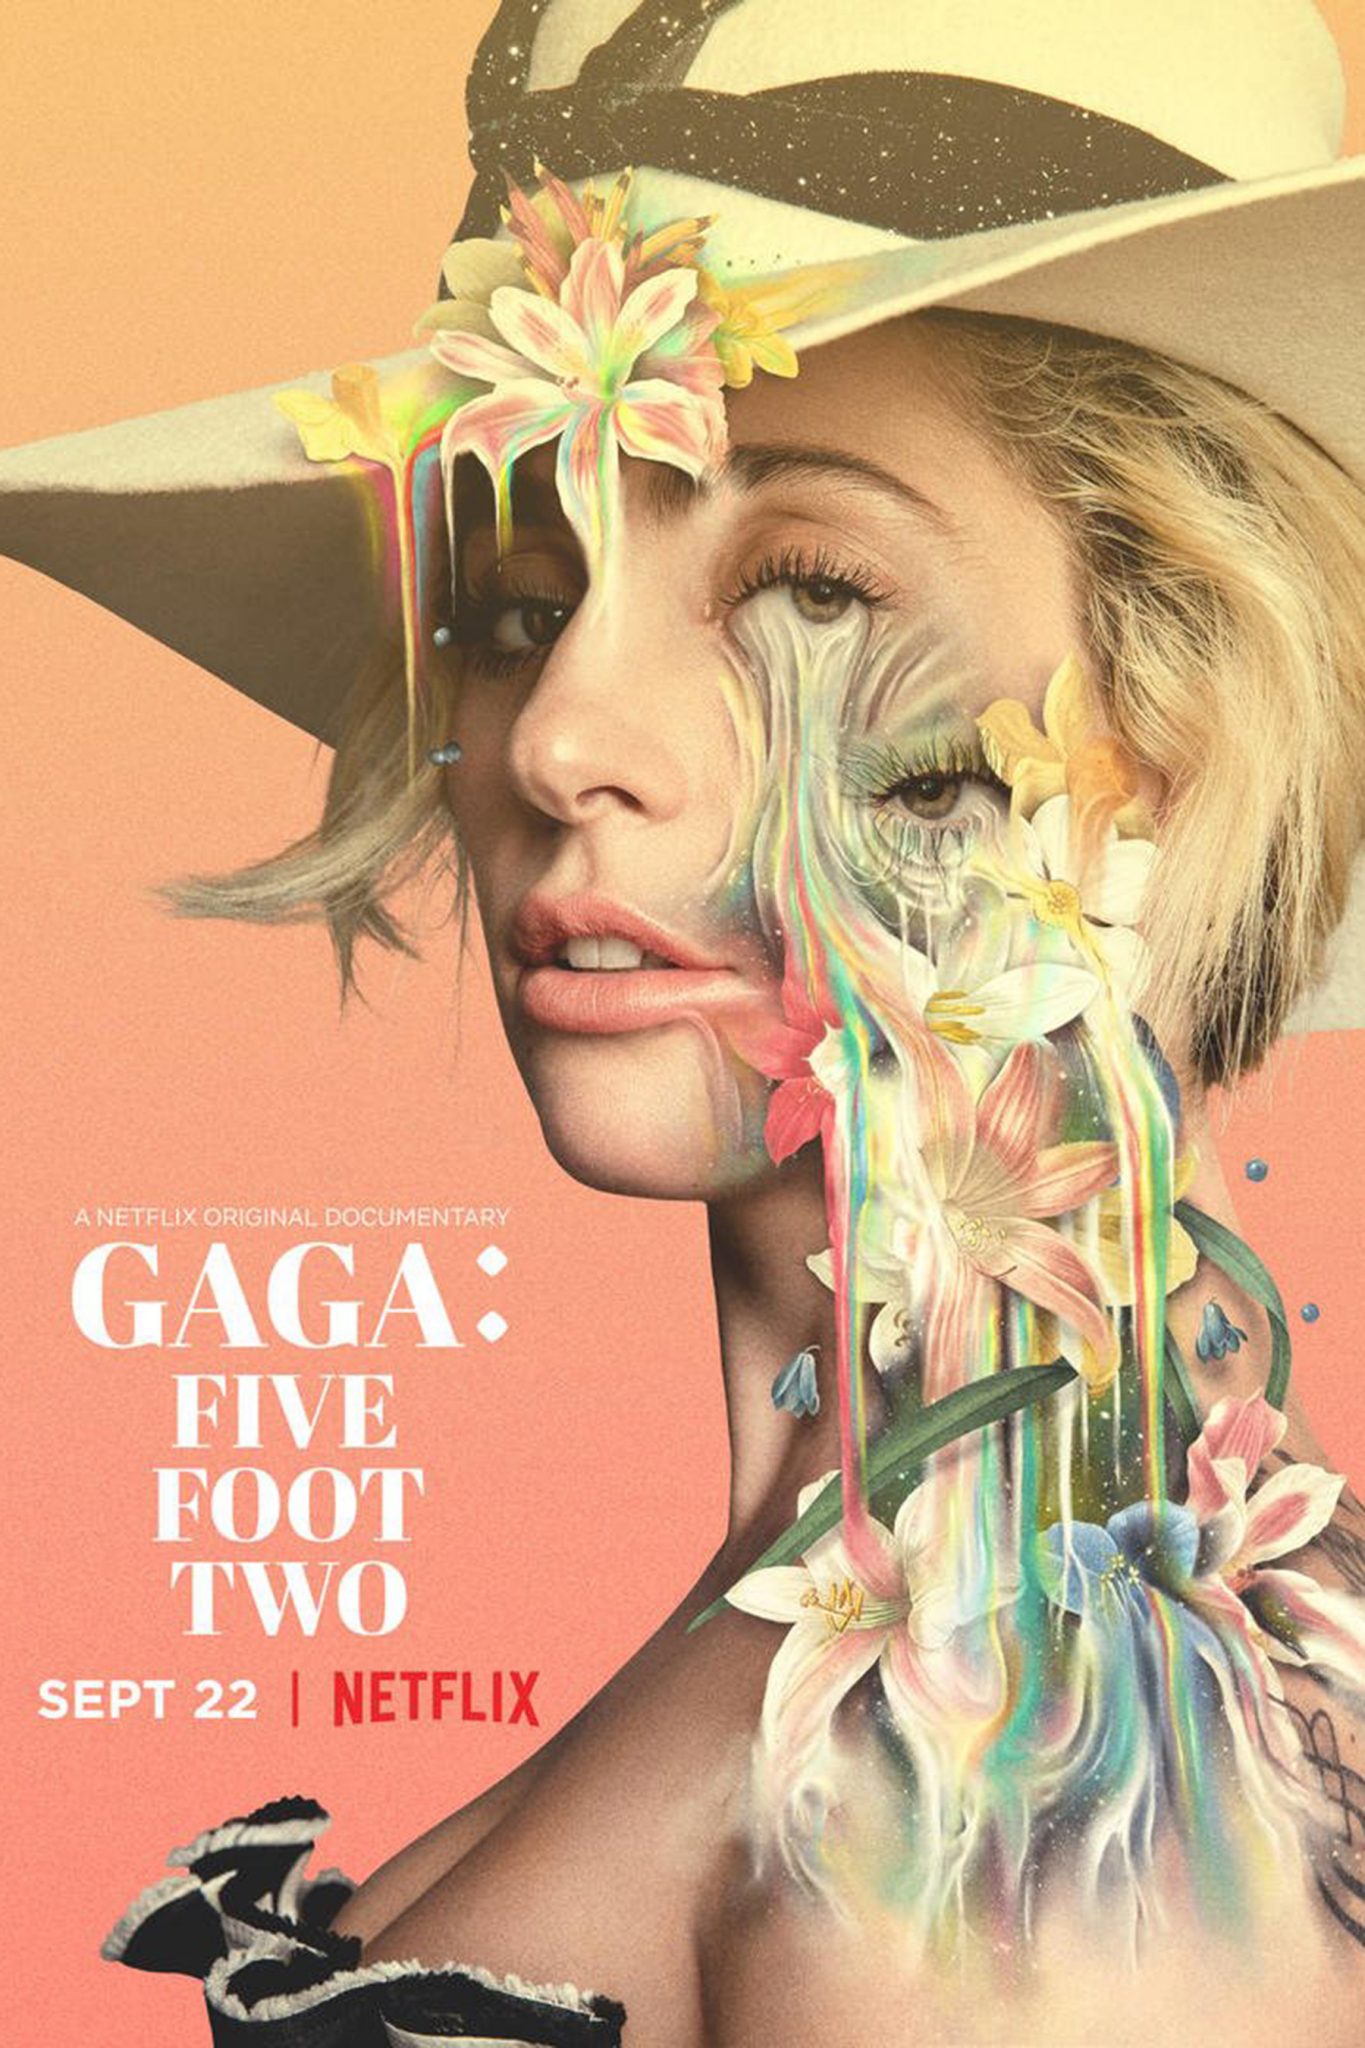 Netflix Libera Trailer do Documentário Sobre a Diva do Pop Lady Gaga 13